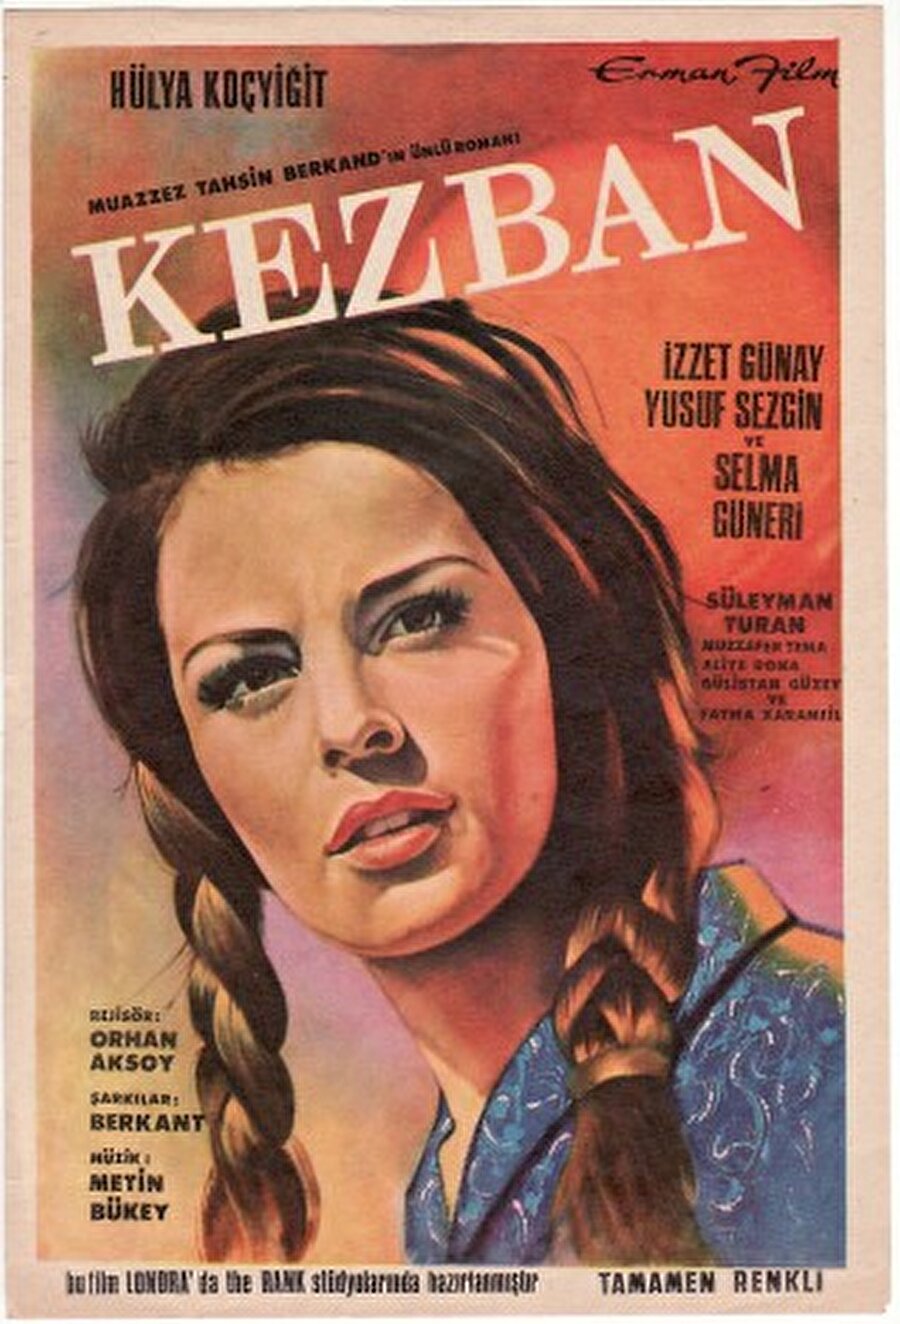 Bu romanlardan biri olan Kezban rolü kendisiyle özdeşleşmeye başlamıştı.

                                    
                                    
                                    
                                
                                
                                